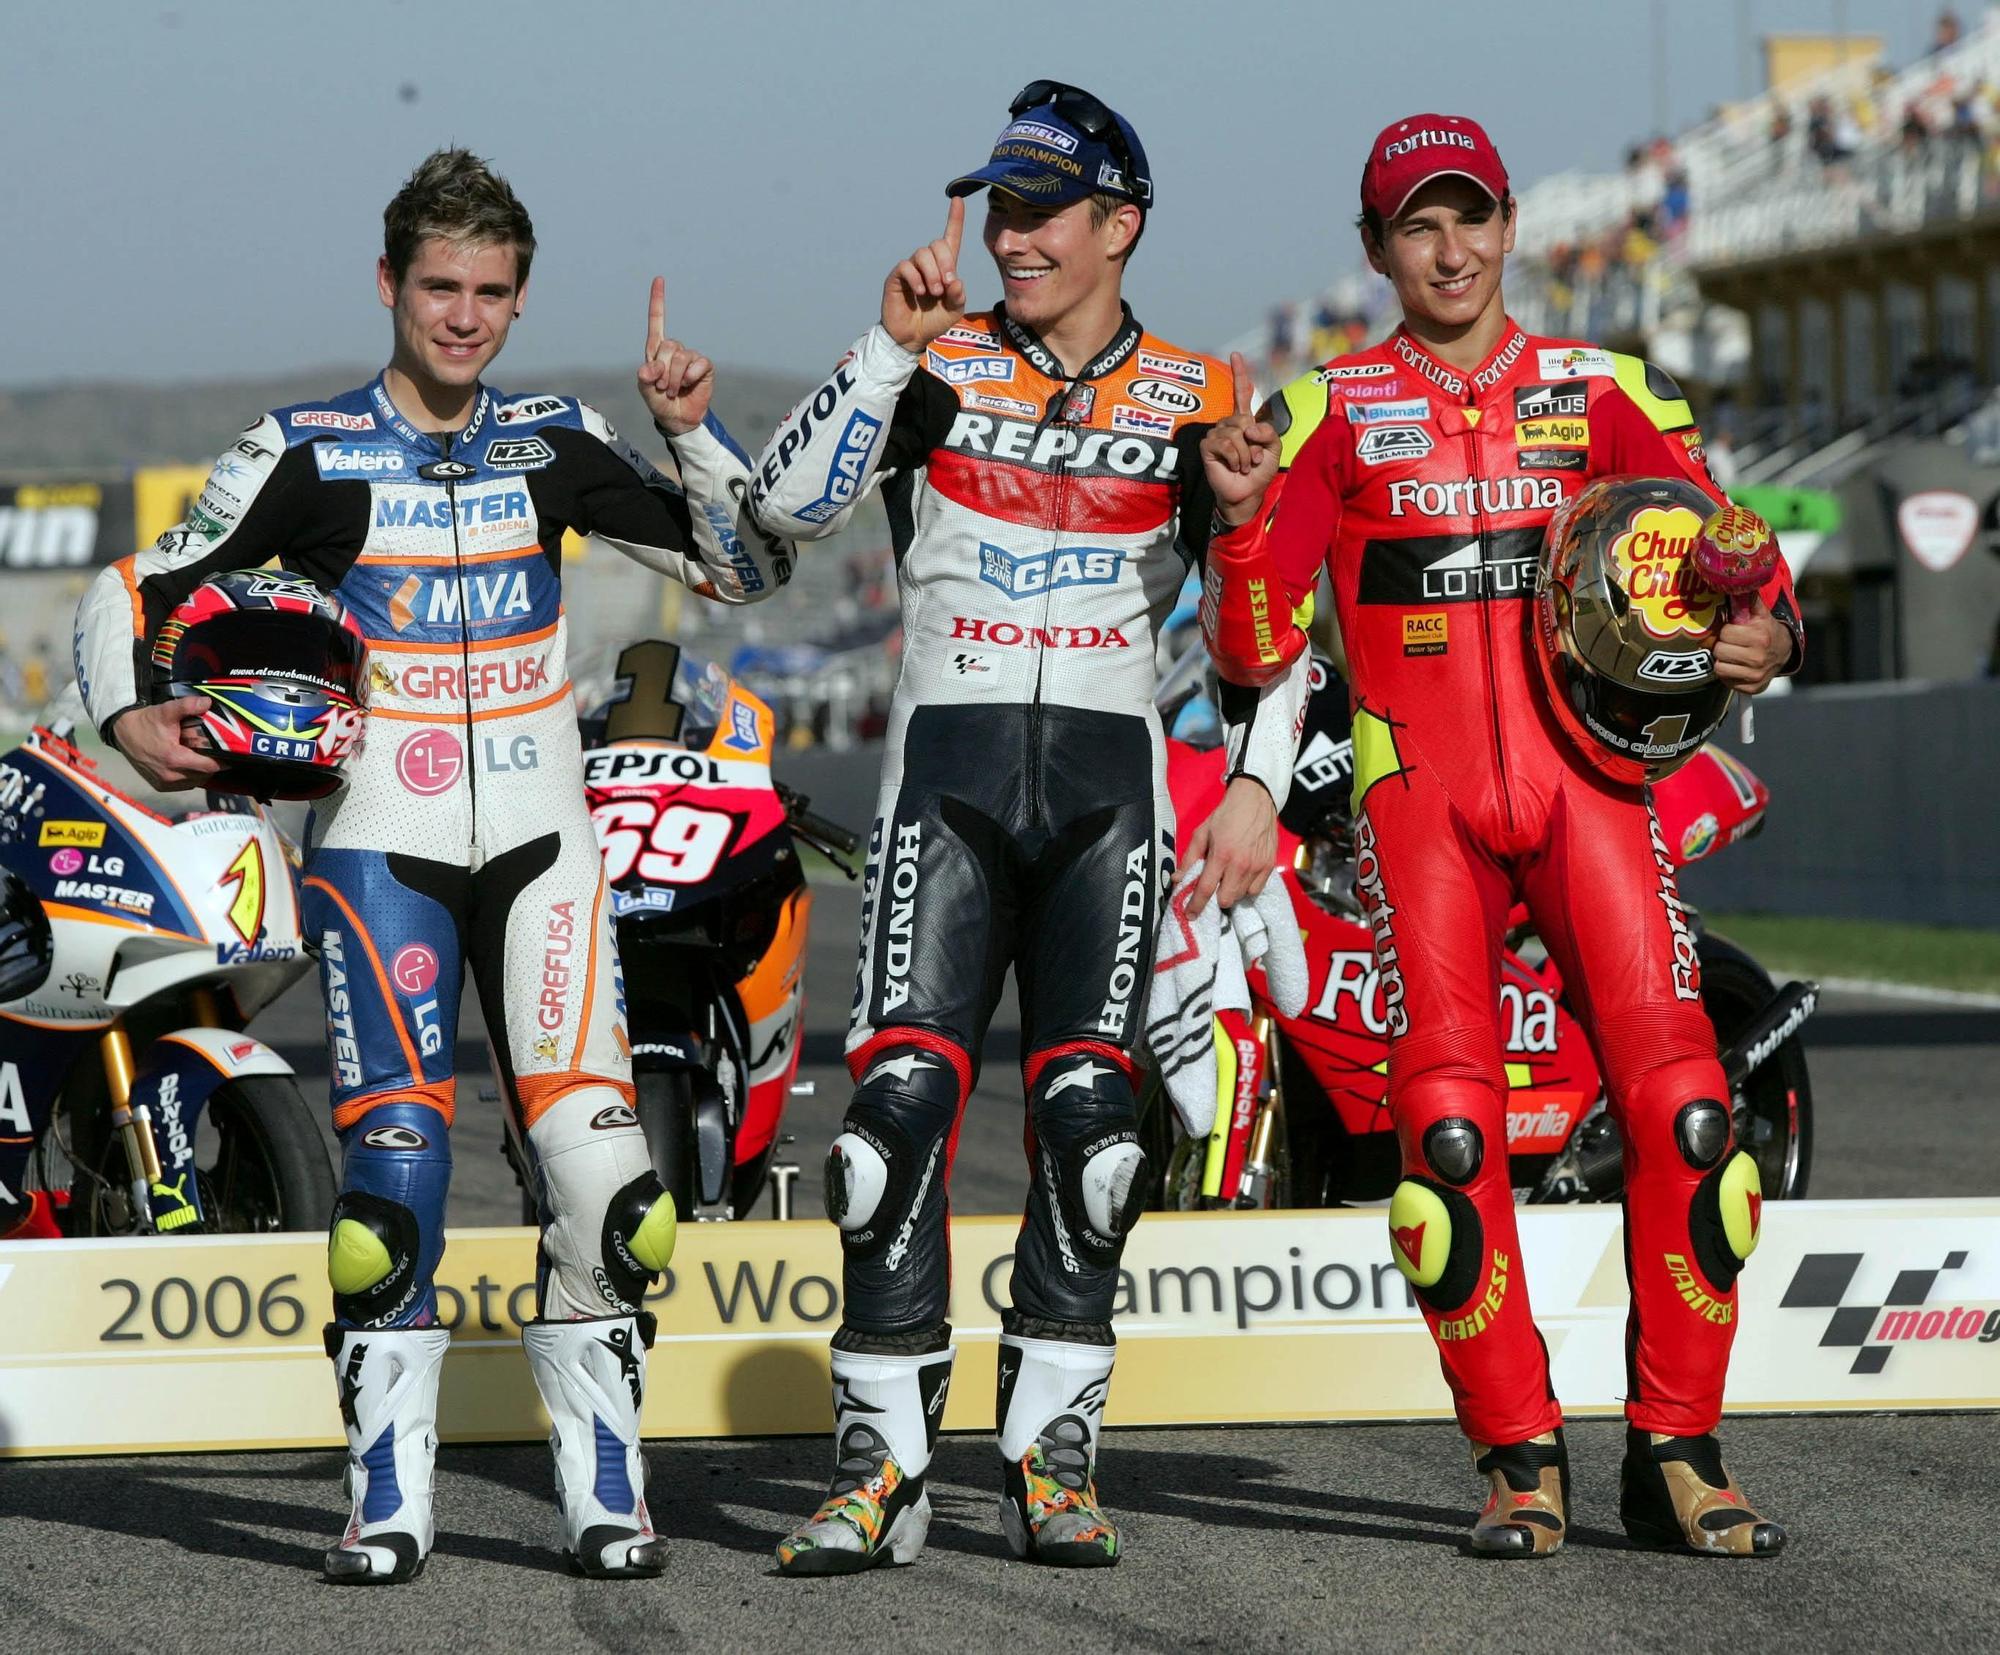 Campeones del mundo en el Gran Premio de la Comunitat Valenciana a lo largo de su historia